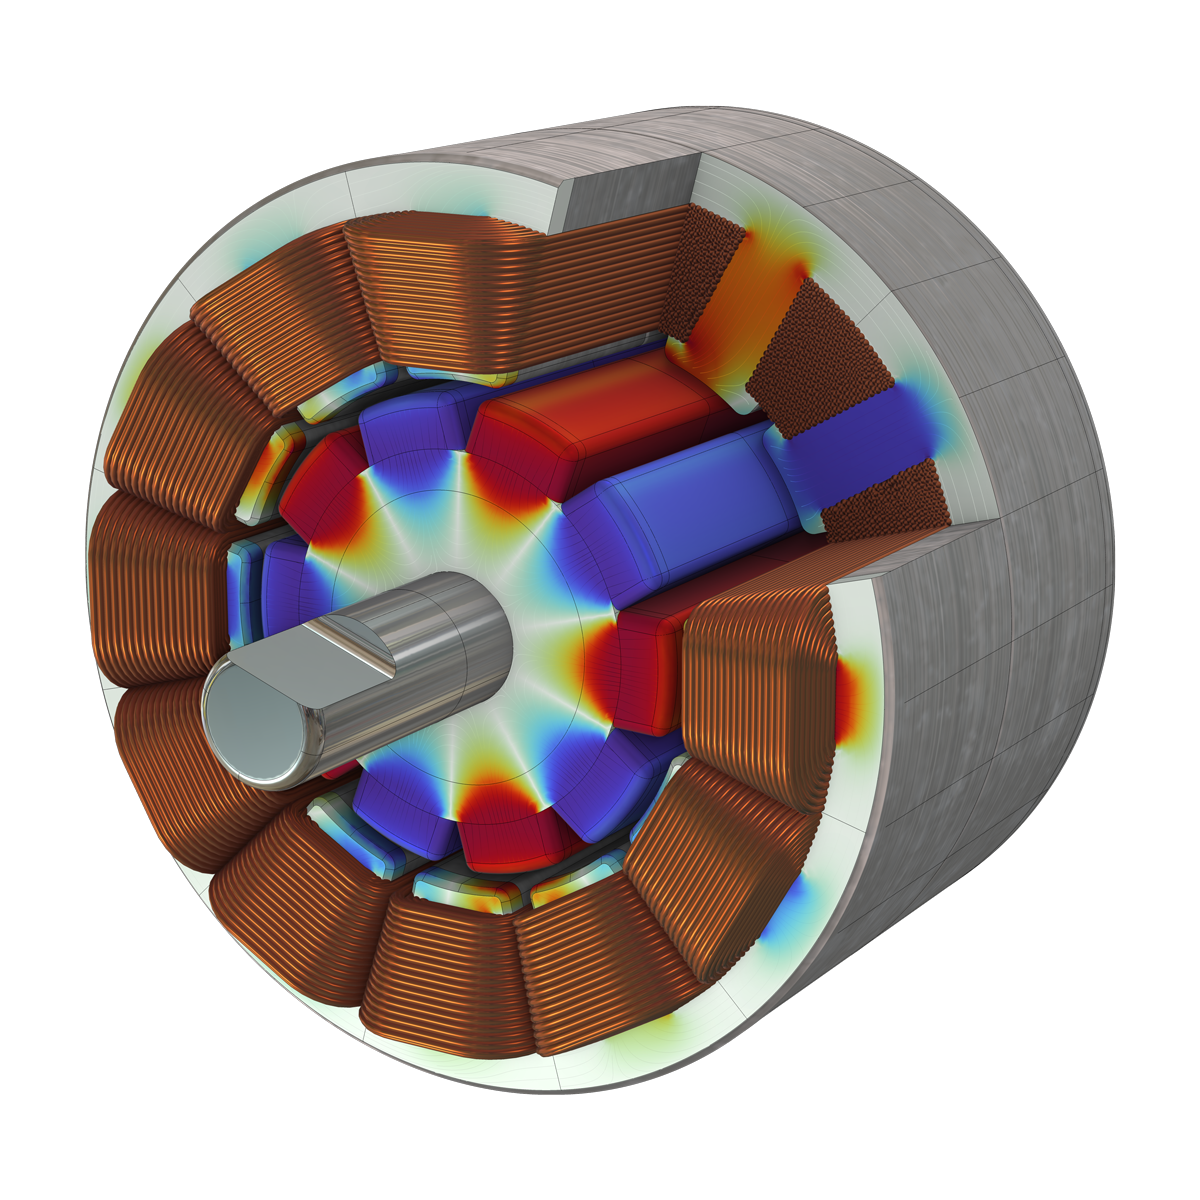 Un modèle 3D de moteur à aimants permanents visualisé avec des bobines de cuivre et un noyau Arc-en-ciel.